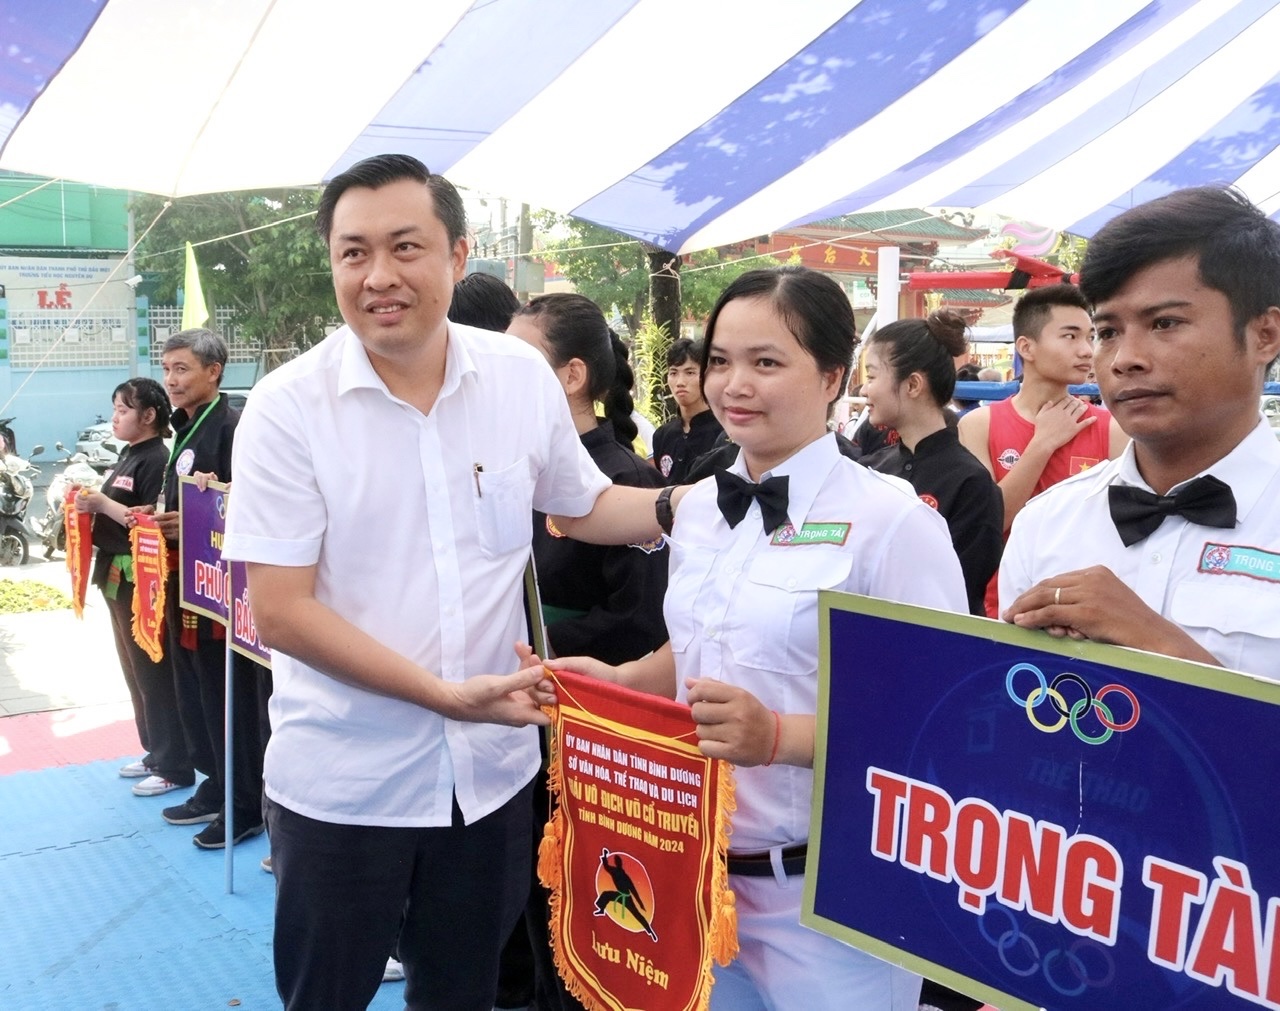 Ông Cao Văn Chóng, Phó Giám đốc Sở Văn hóa, Thể thao và Du lịch tỉnh Bình Dương - Trưởng Ban Tổ chức giải tặng cờ lưu niệm cho các đơn vị tham dự giải